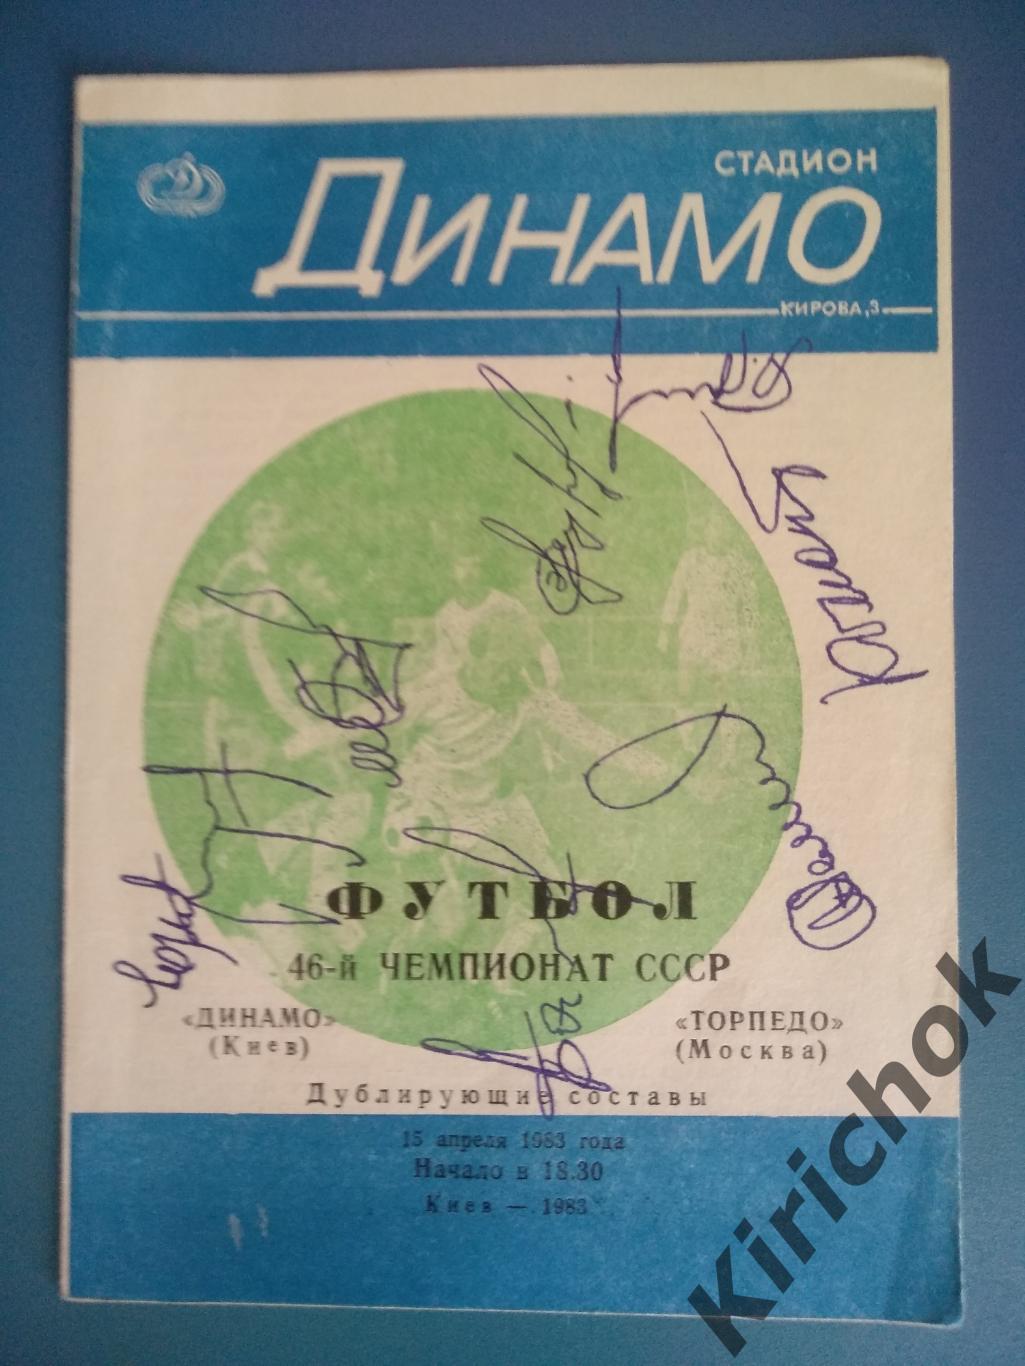 Автографы 1983. Динамо Киев - Торпедо Москва 1983. 7 автографов